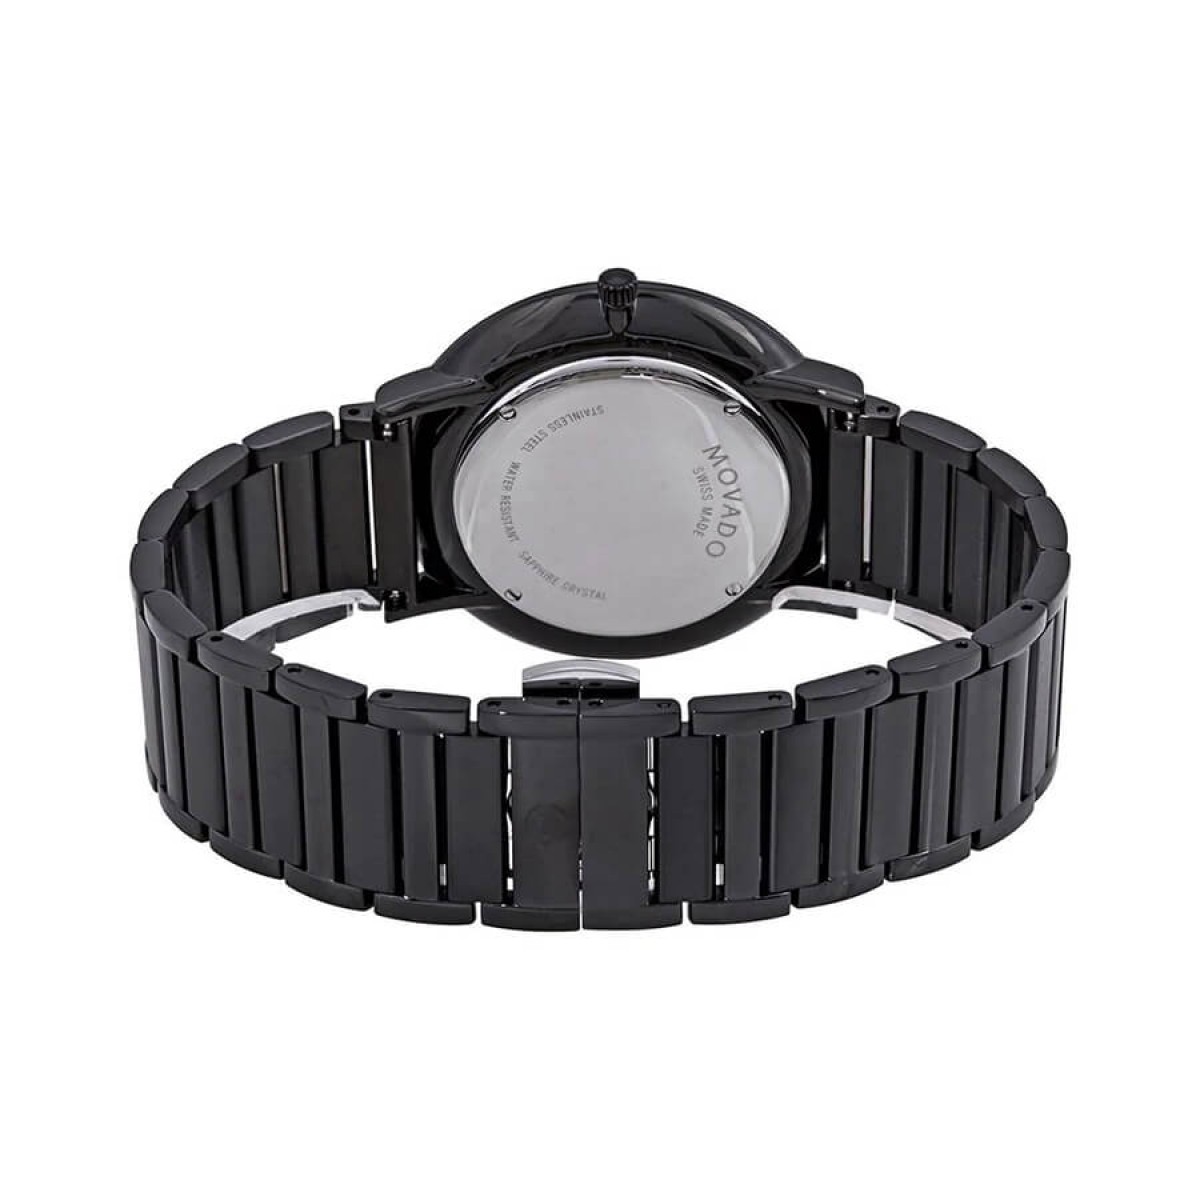 Комплект часовници за двойки Movado Ultra Slim 607210 & 607211